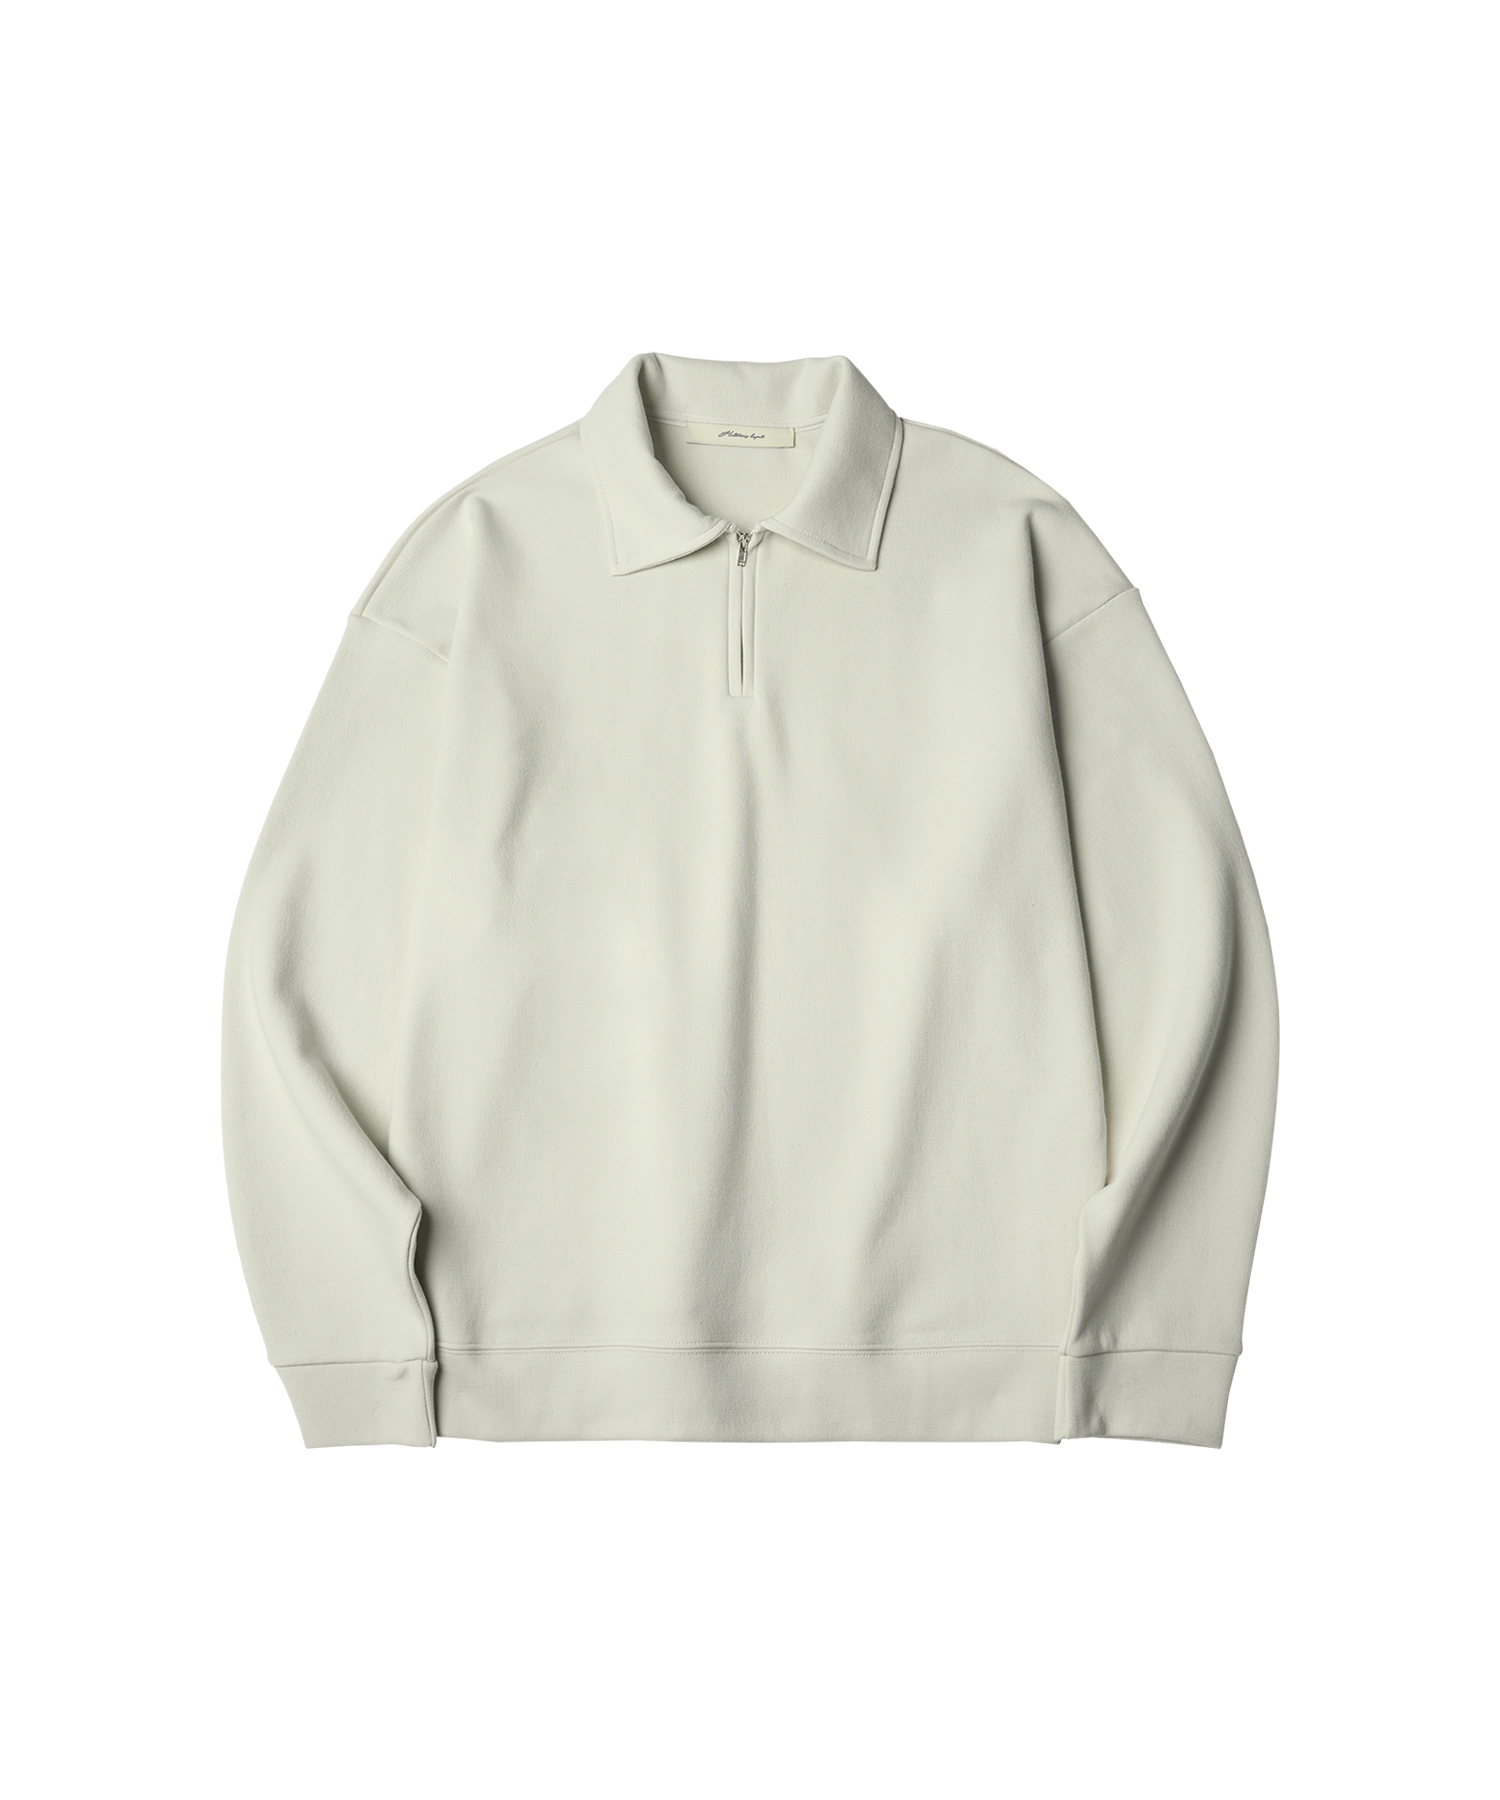 T20024 Collar zip-up sweatshirt_Light beige